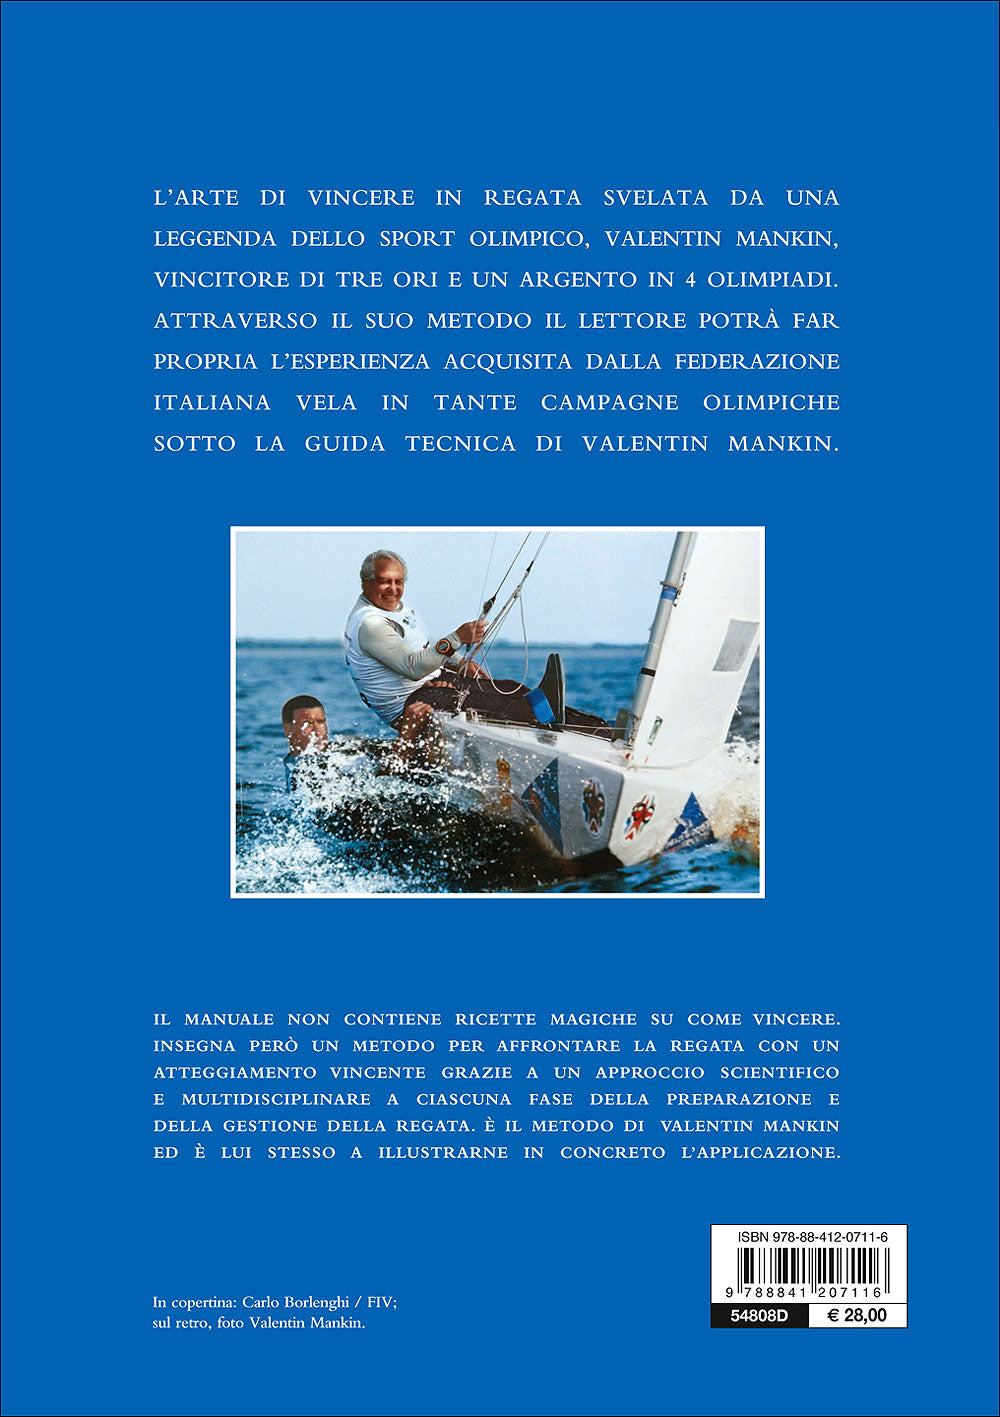 Manuale della vela agonistica. Imbarcazione ed equipaggio, preparazione e messa a punto, strategia e tattica di regata